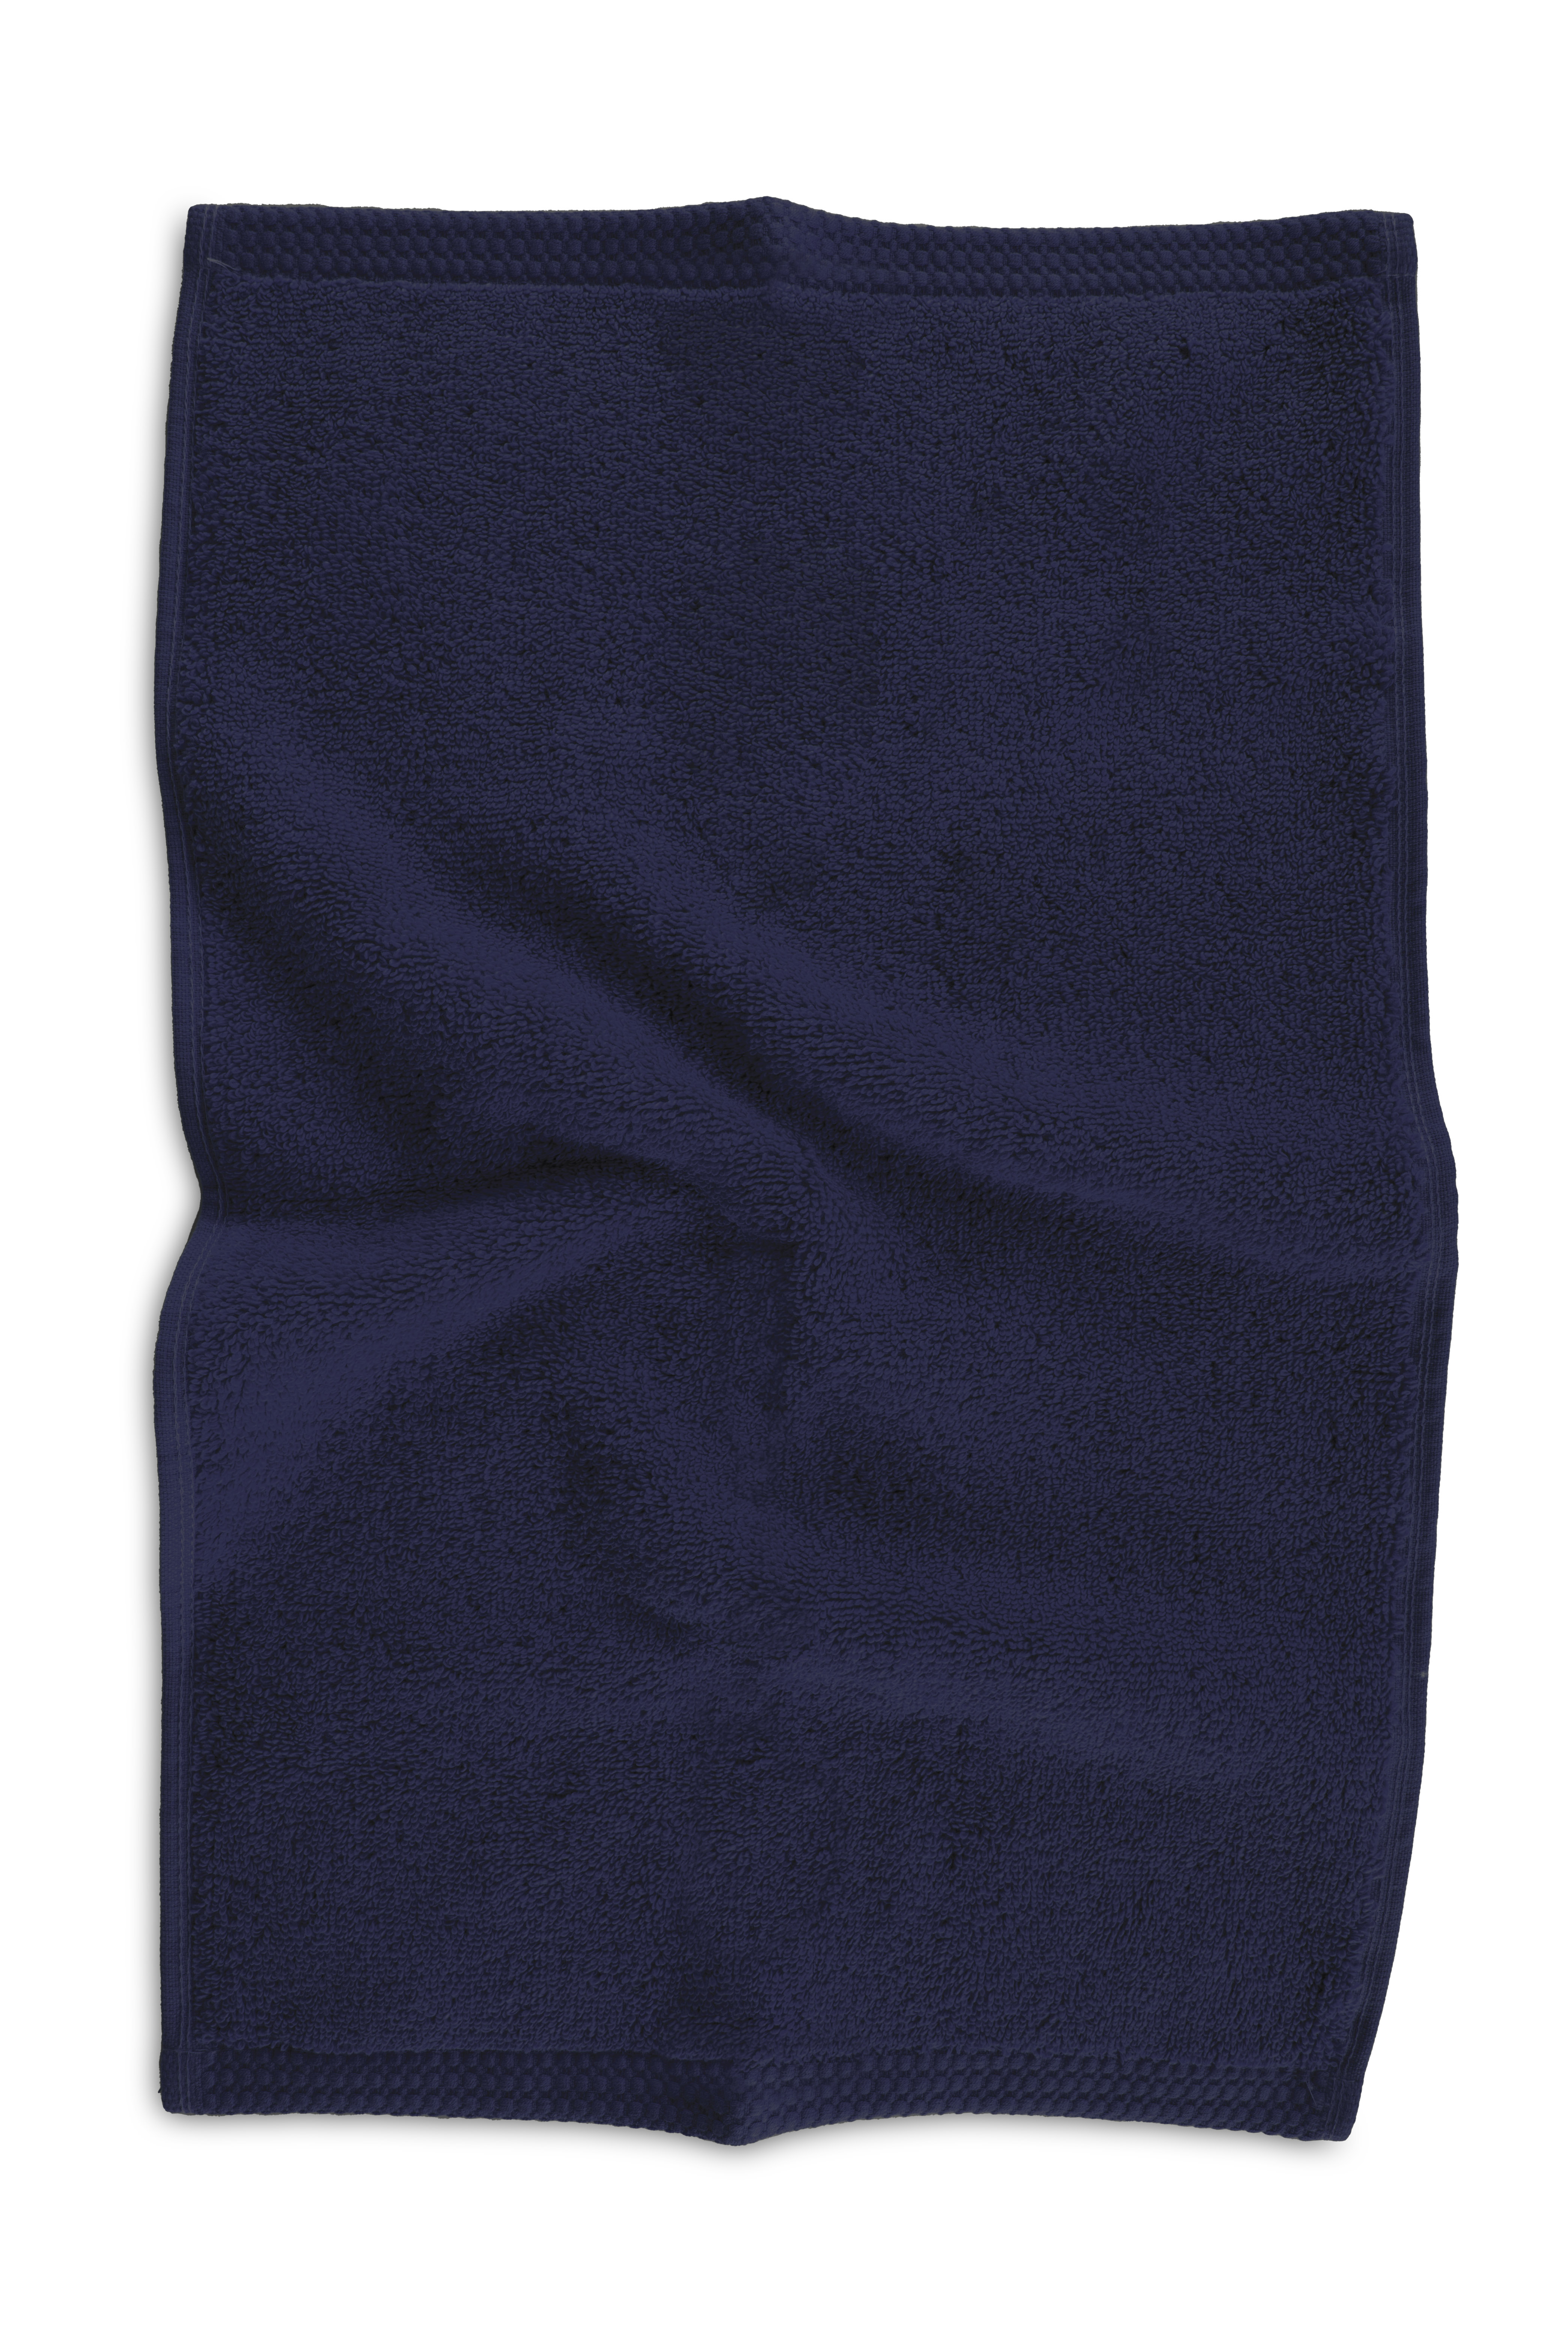 Serviette DELUX 30x50cm, dark blue